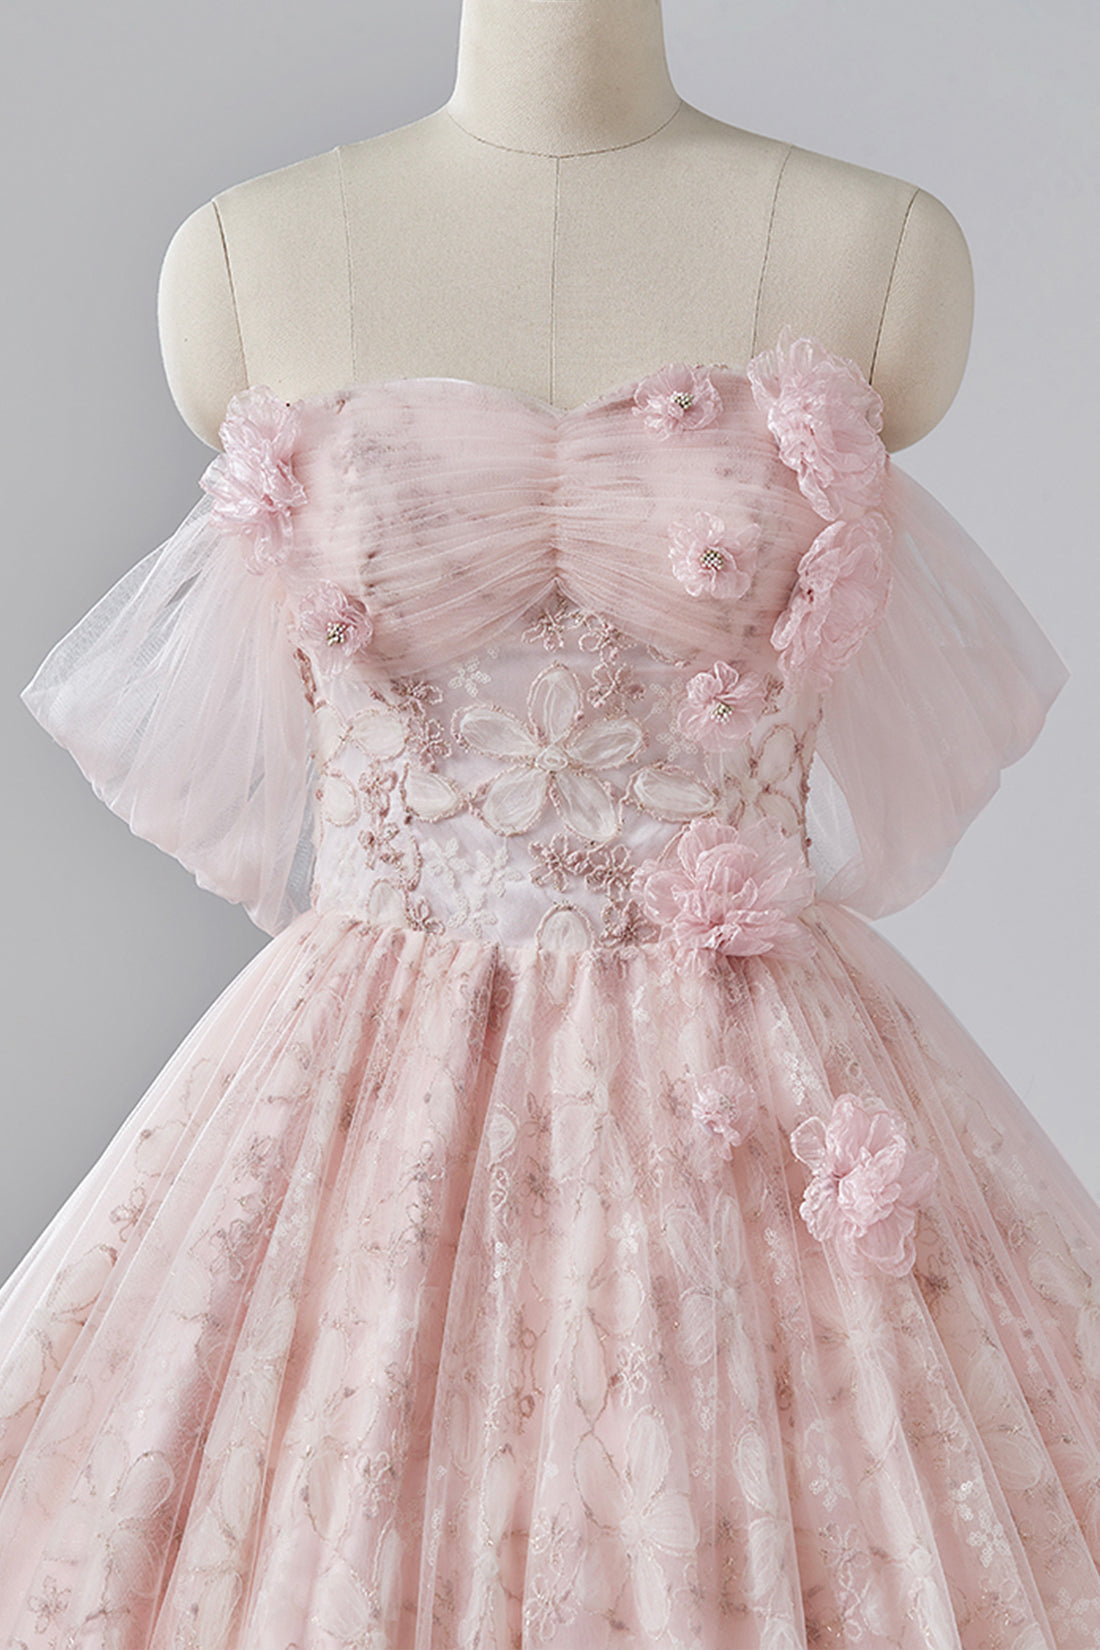 Light Pink Tulle Long Prom Dress, Off the Shoulder A-Line Evening Formal Dress